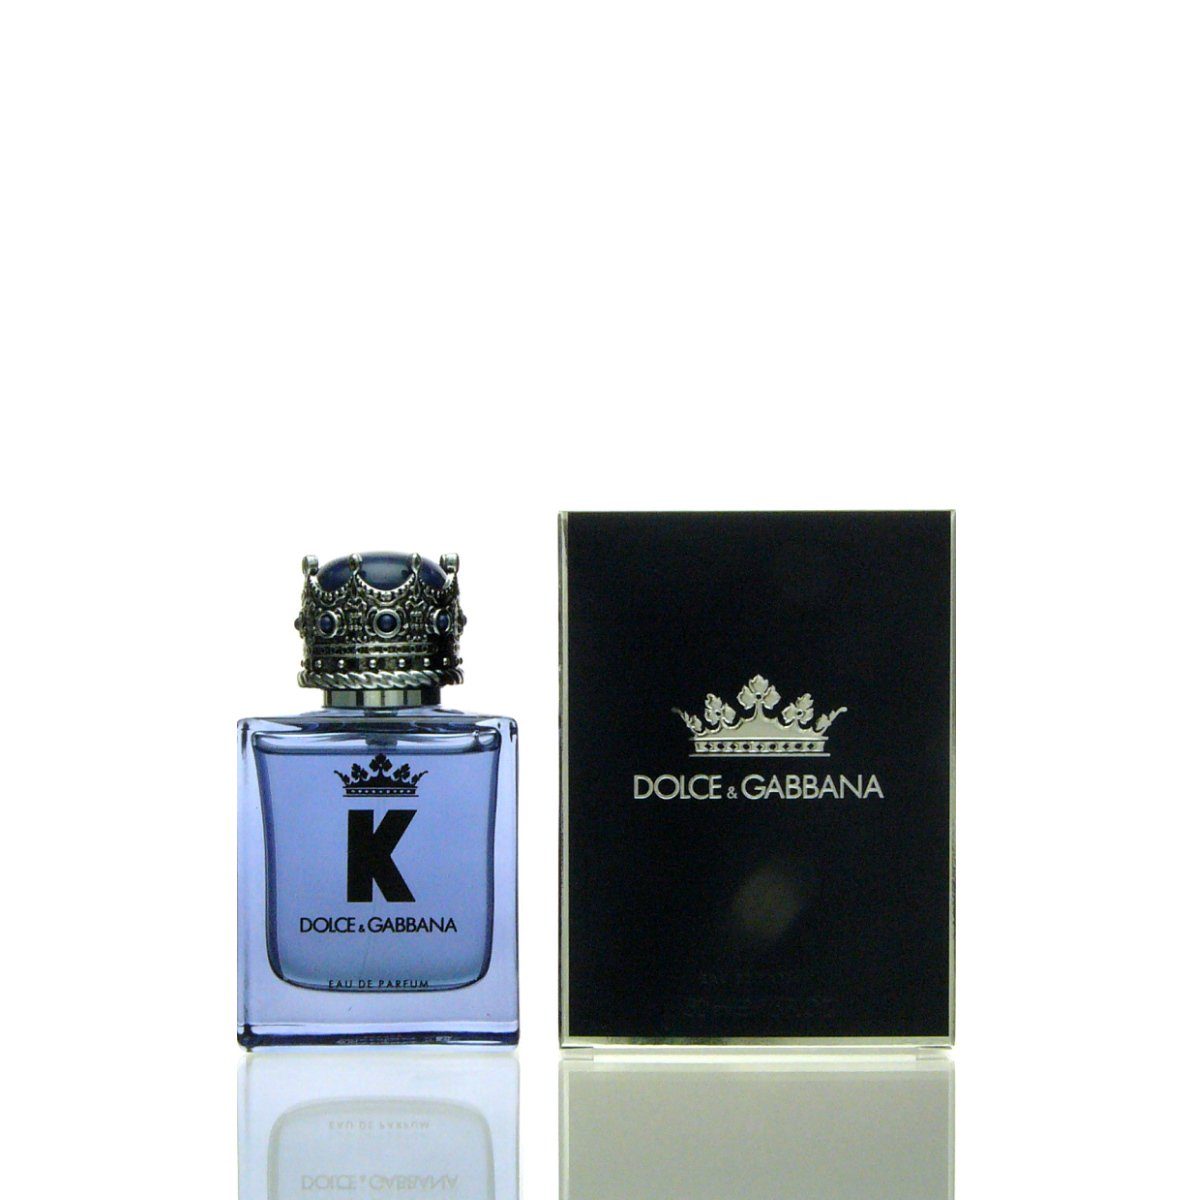 DOLCE & GABBANA Парфюми Dolce & Gabbana D&G K Парфюми 50 ml